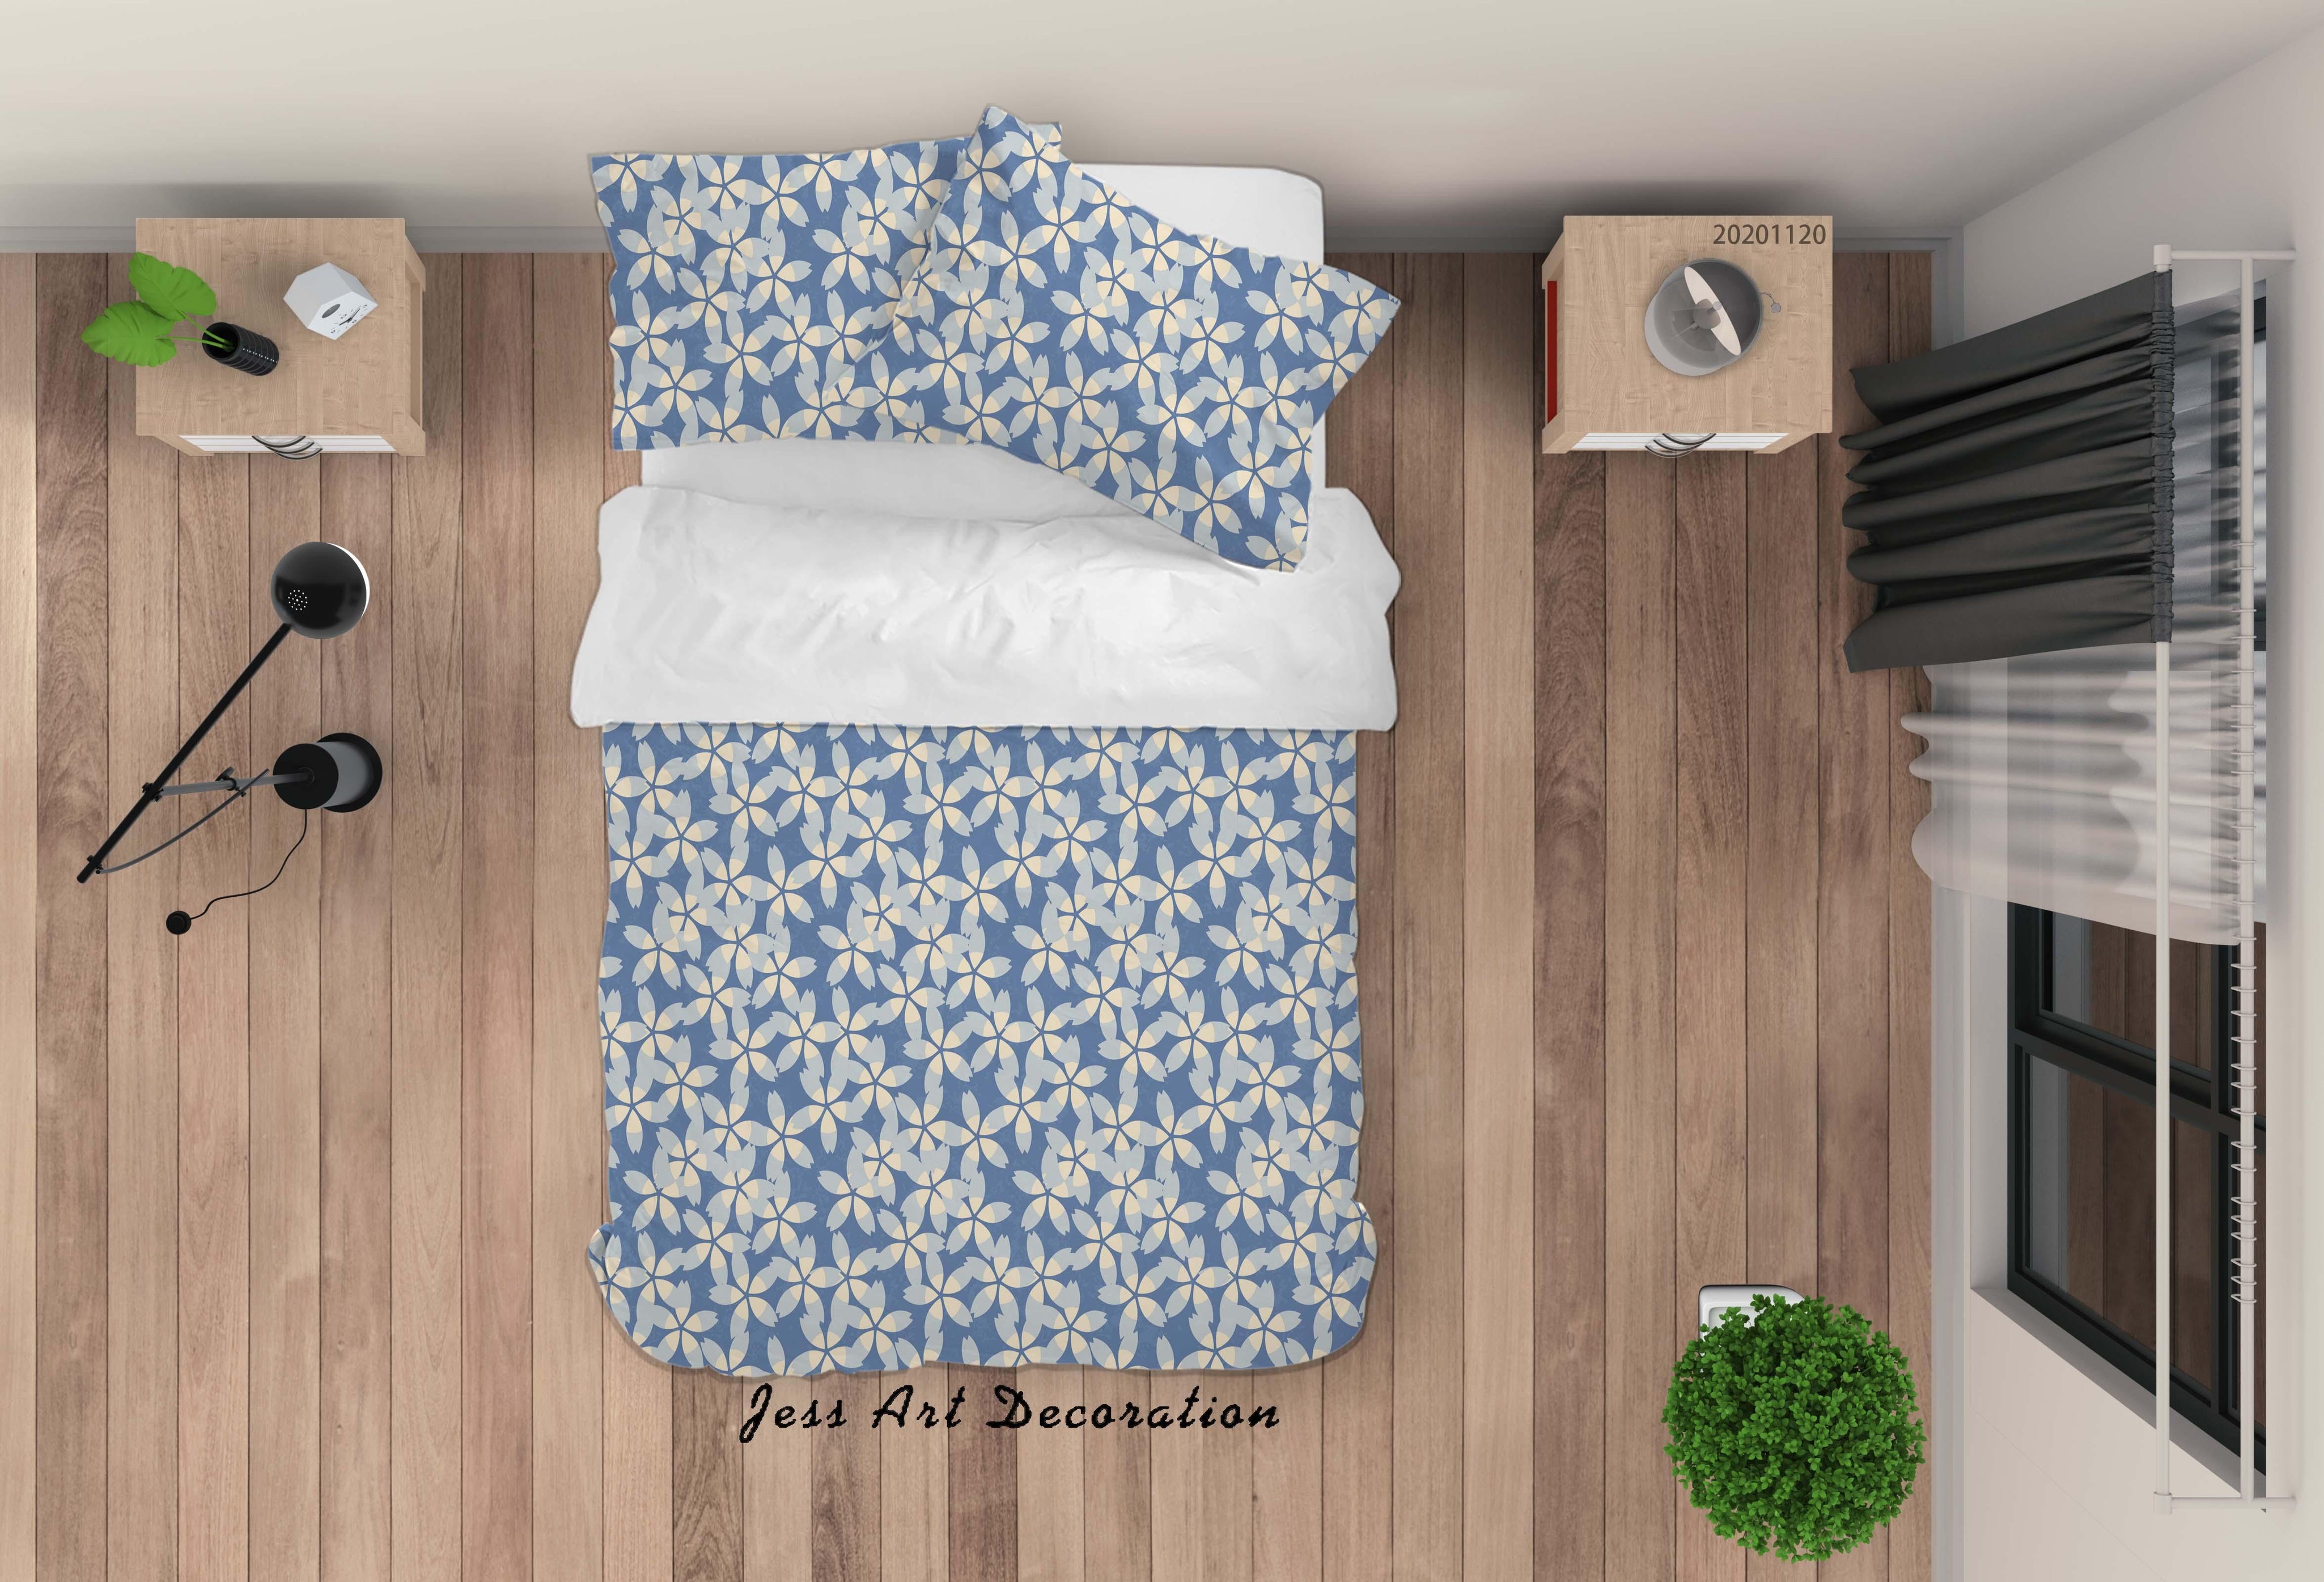 3D White Floral Pattern Blue Quilt Cover Set Bedding Set Duvet Cover Pillowcases LXL- Jess Art Decoration